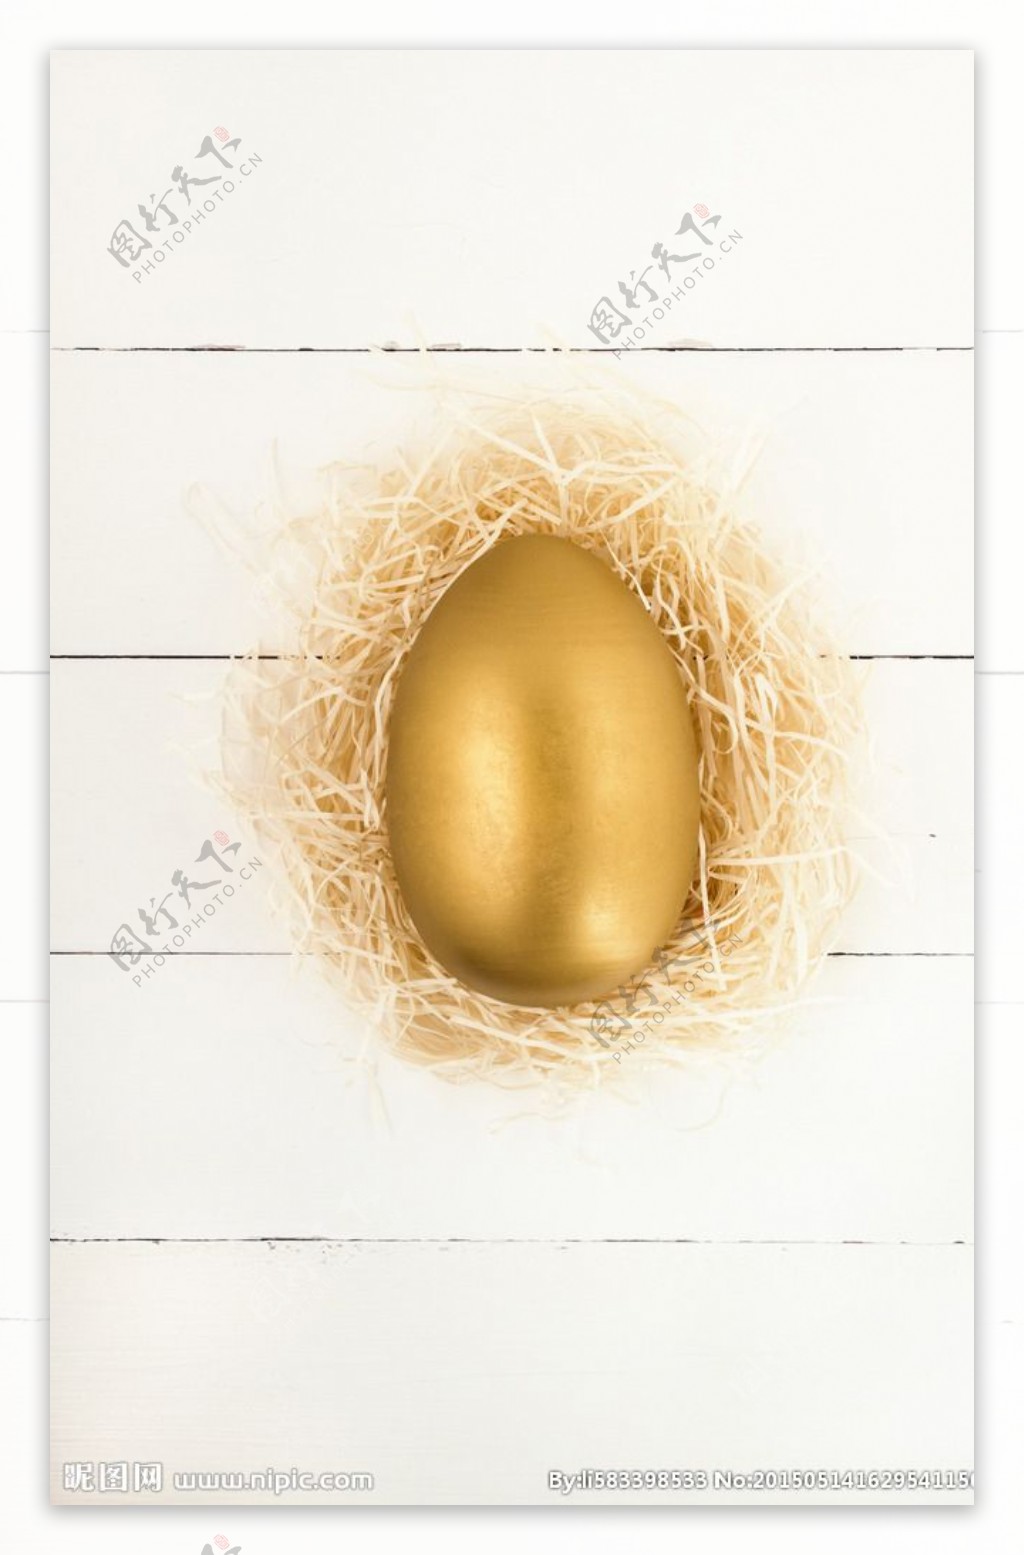 在鸟巢里的金鸡蛋高清图片